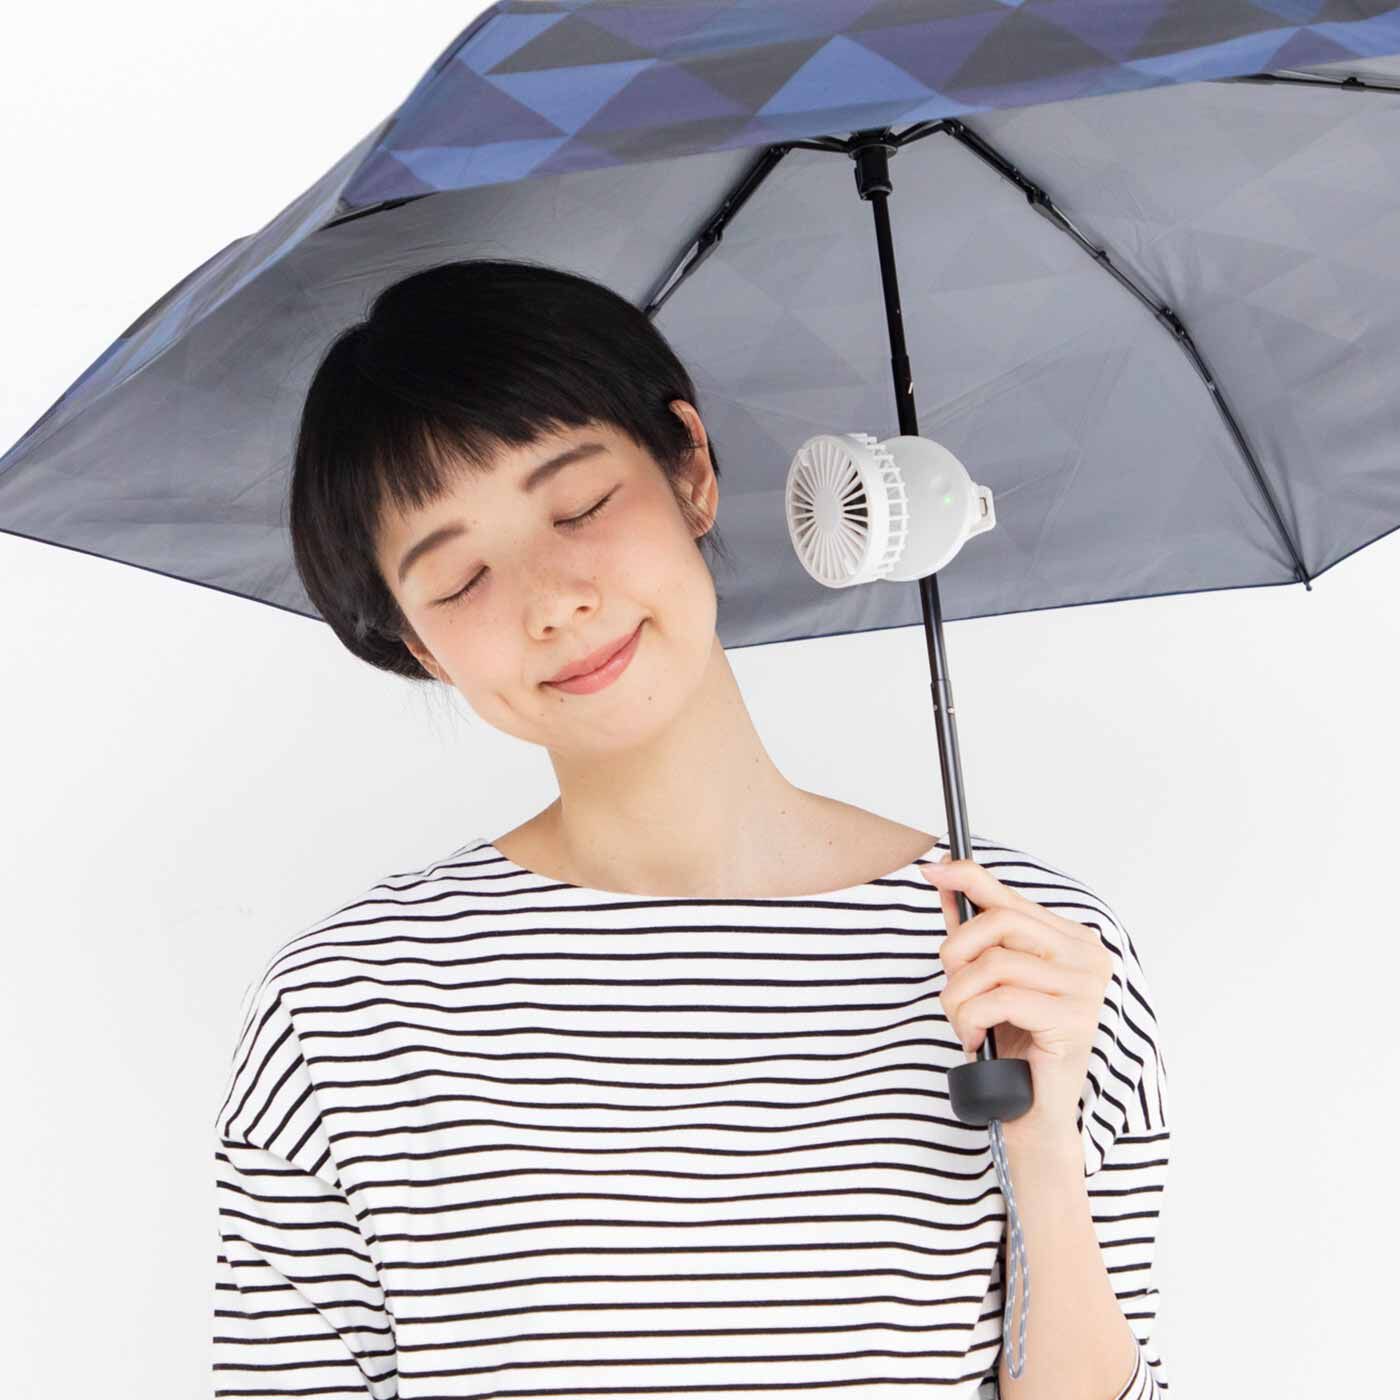 L'AMIPLUS|傘にリュックに装着簡単！ 移動中も快適なコンパクトクリップファン〈ホワイト〉|日傘の中棒に付けて、こっそり涼風を浴びられます。